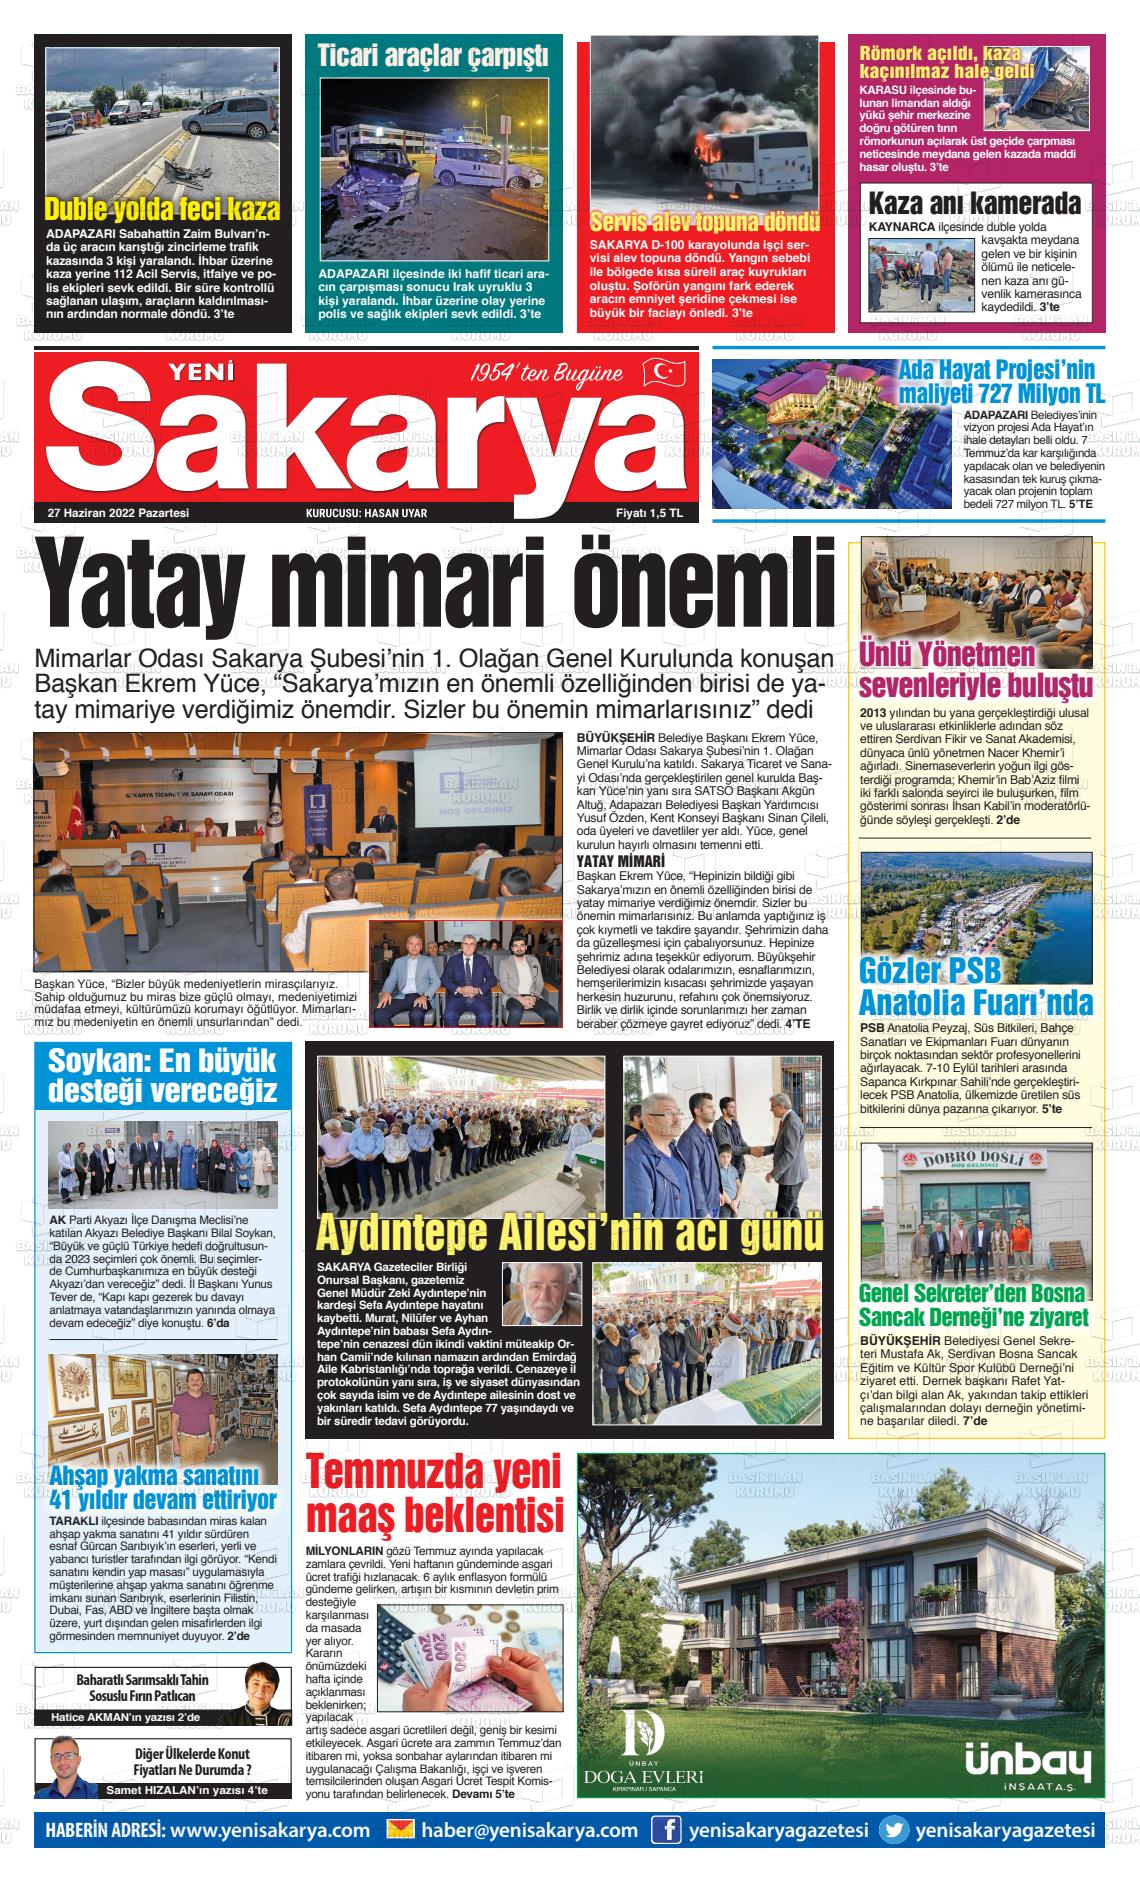 27 Haziran 2022 Yeni Sakarya Gazete Manşeti